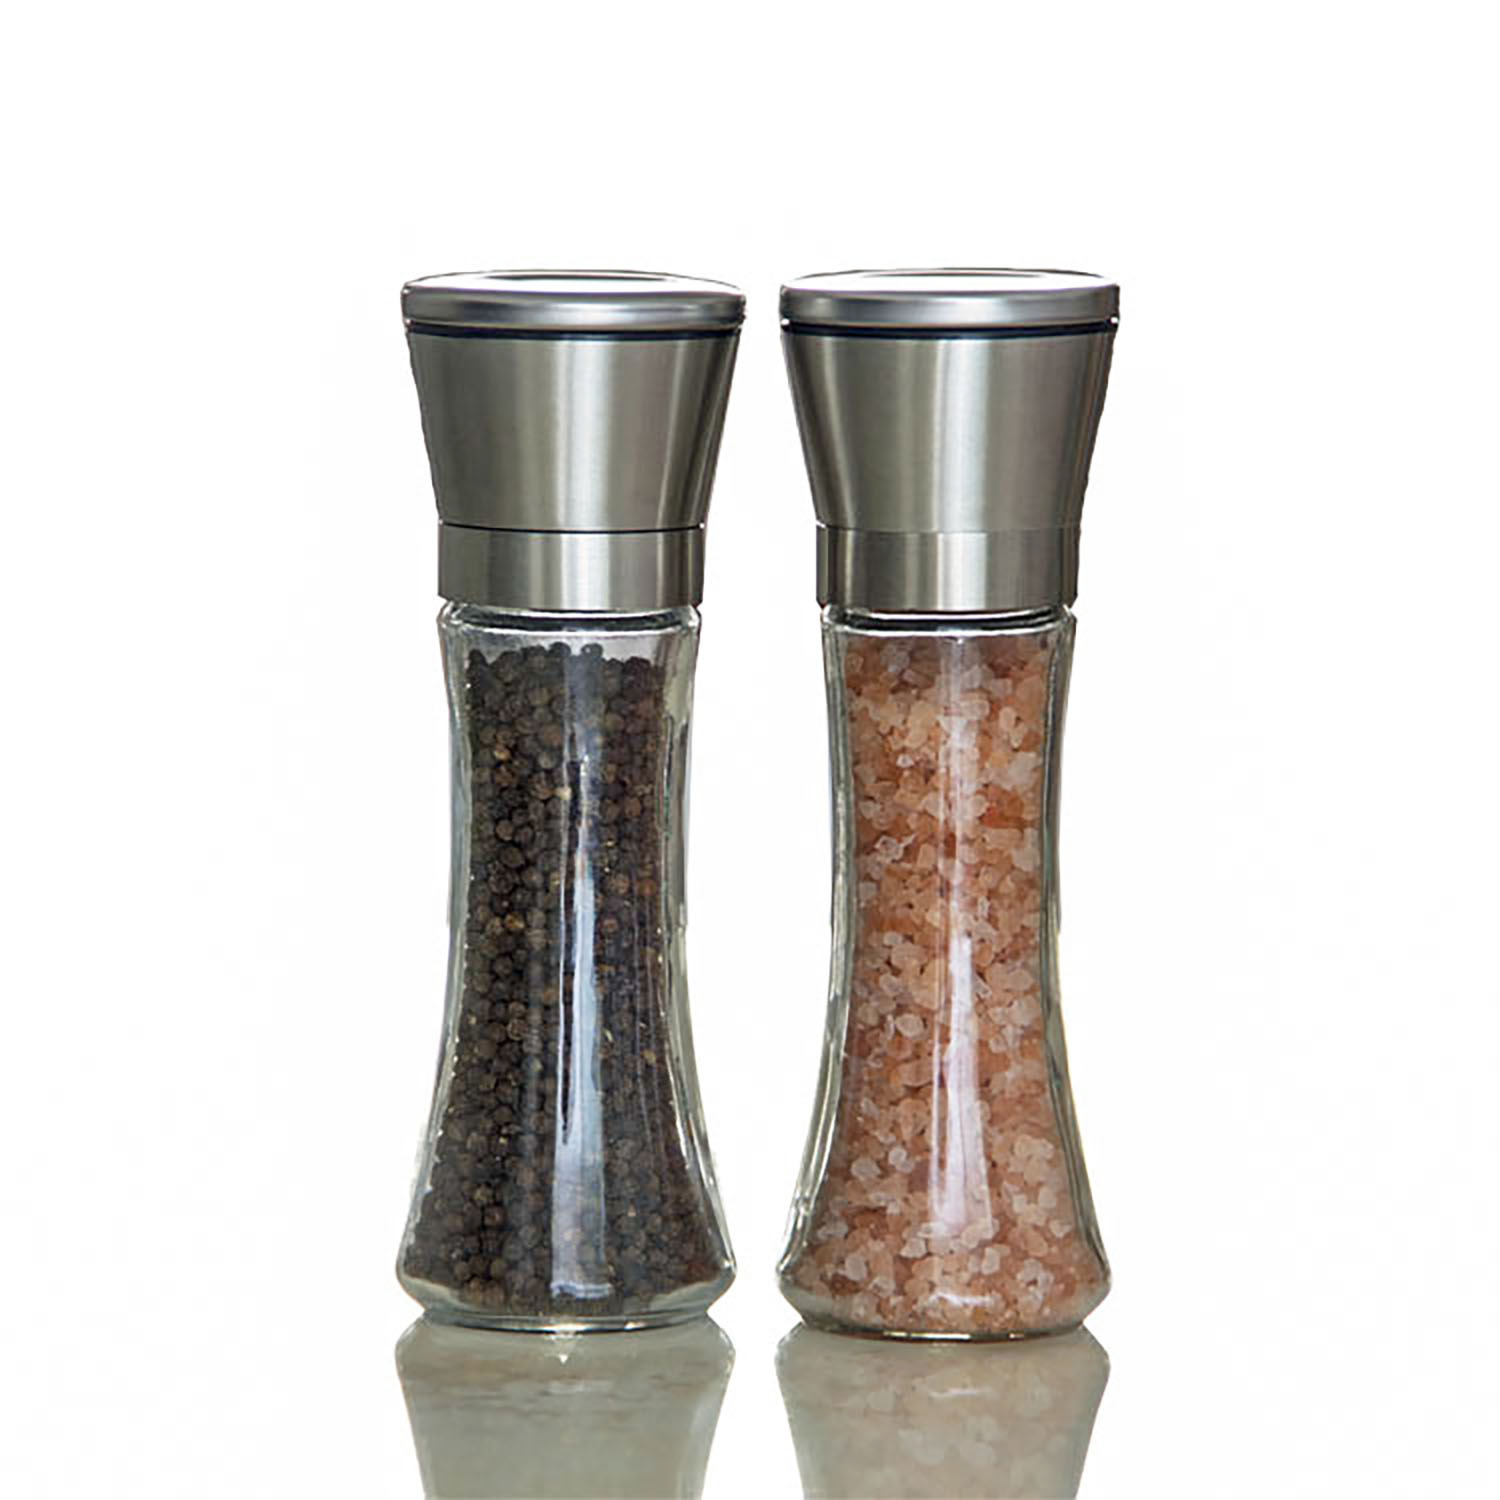 Home EC Salt and Pepper Grinder Set 2pk- Short